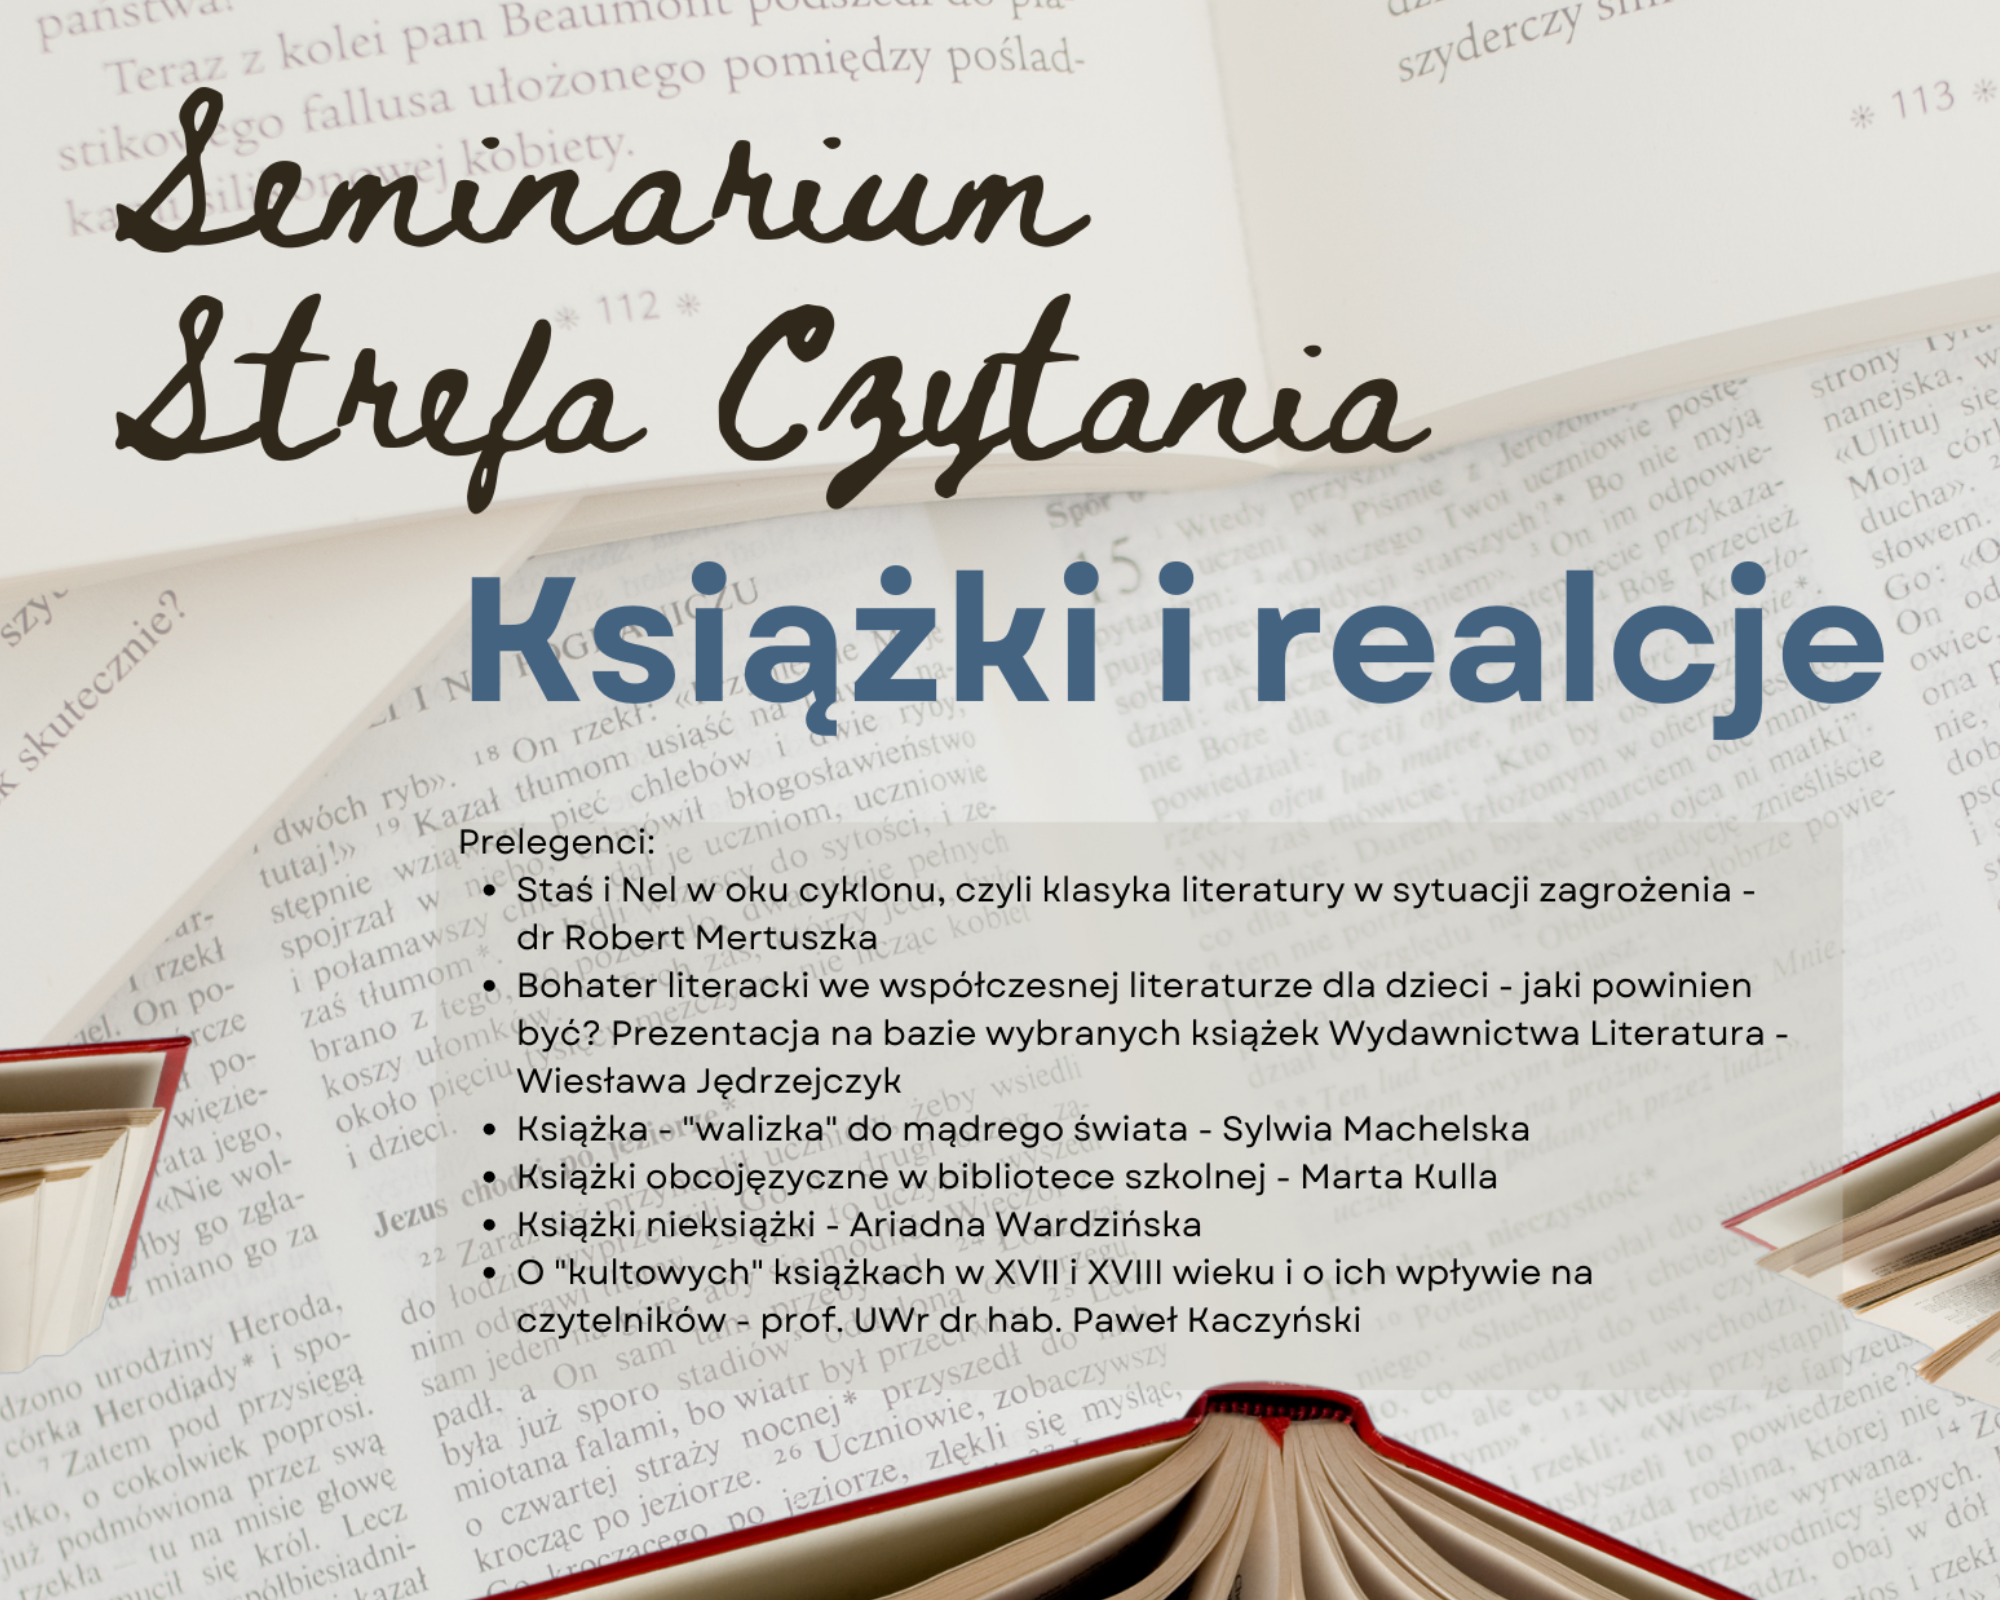 Seminarium Strefa Czytania - Książki i relacje